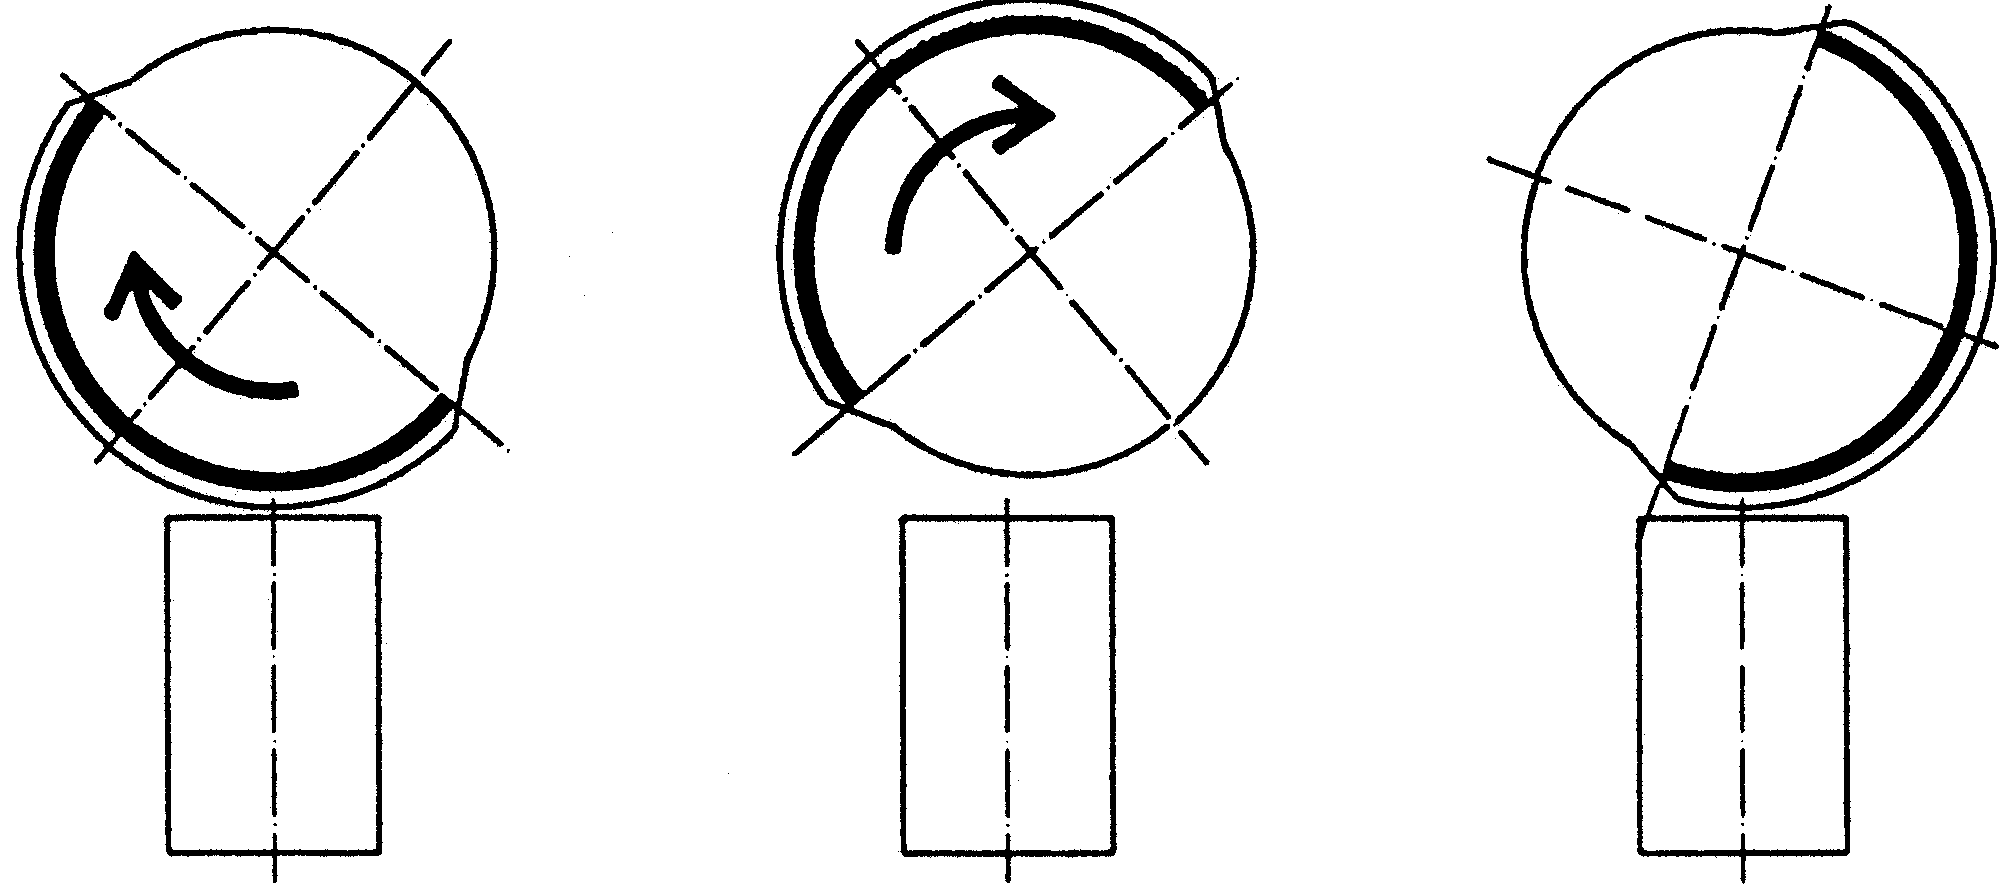 Stiftkonfiguratio nerna visar kopplingsschemana på monteringsplattan. Följ kopp lingsschemat med plintnummer, och vid anslutning av den övre givaren.